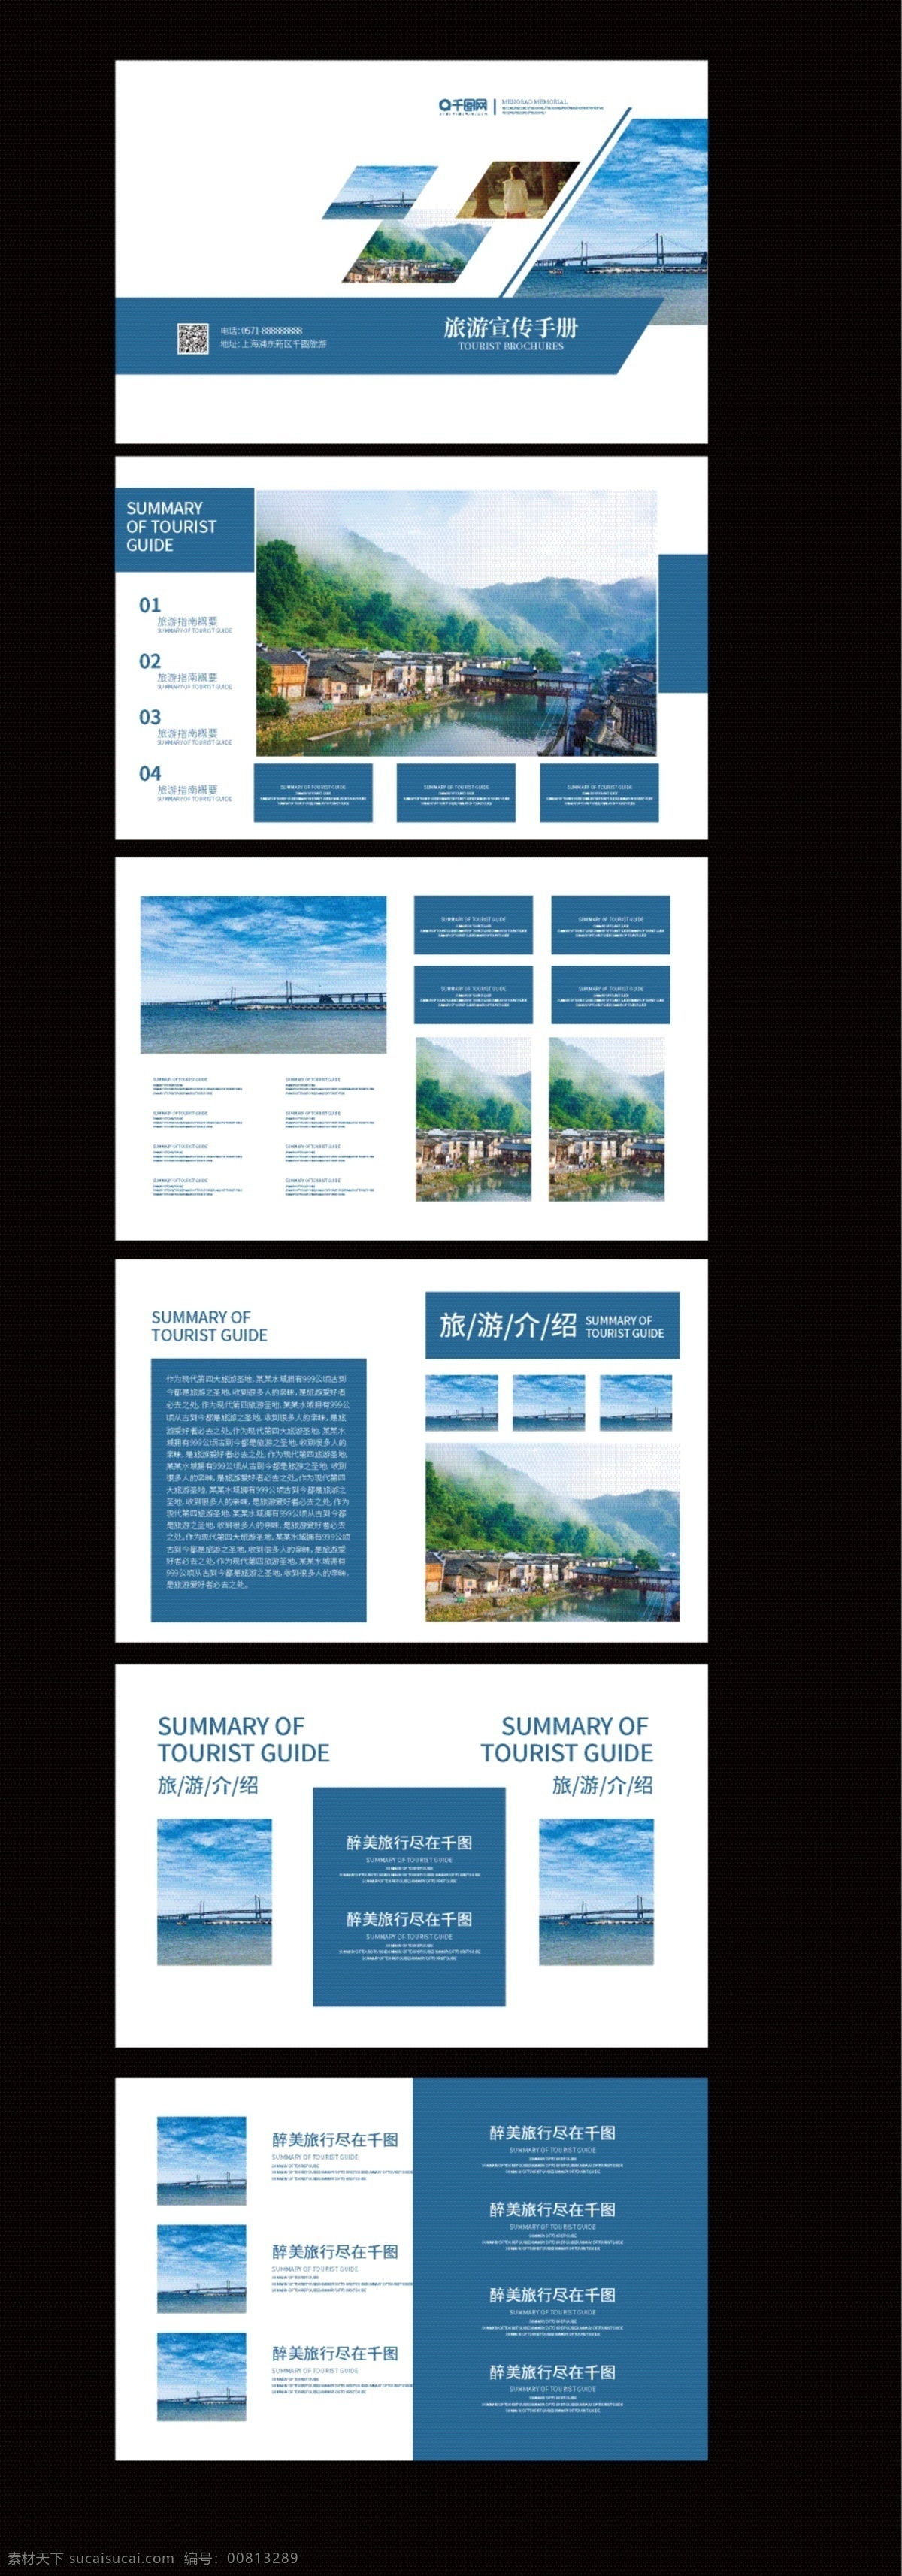 蓝色 简约 旅行社 旅游 宣传手册 整套 旅游宣传手册 宣传画册 旅游宣传 旅行宣传 蓝色风